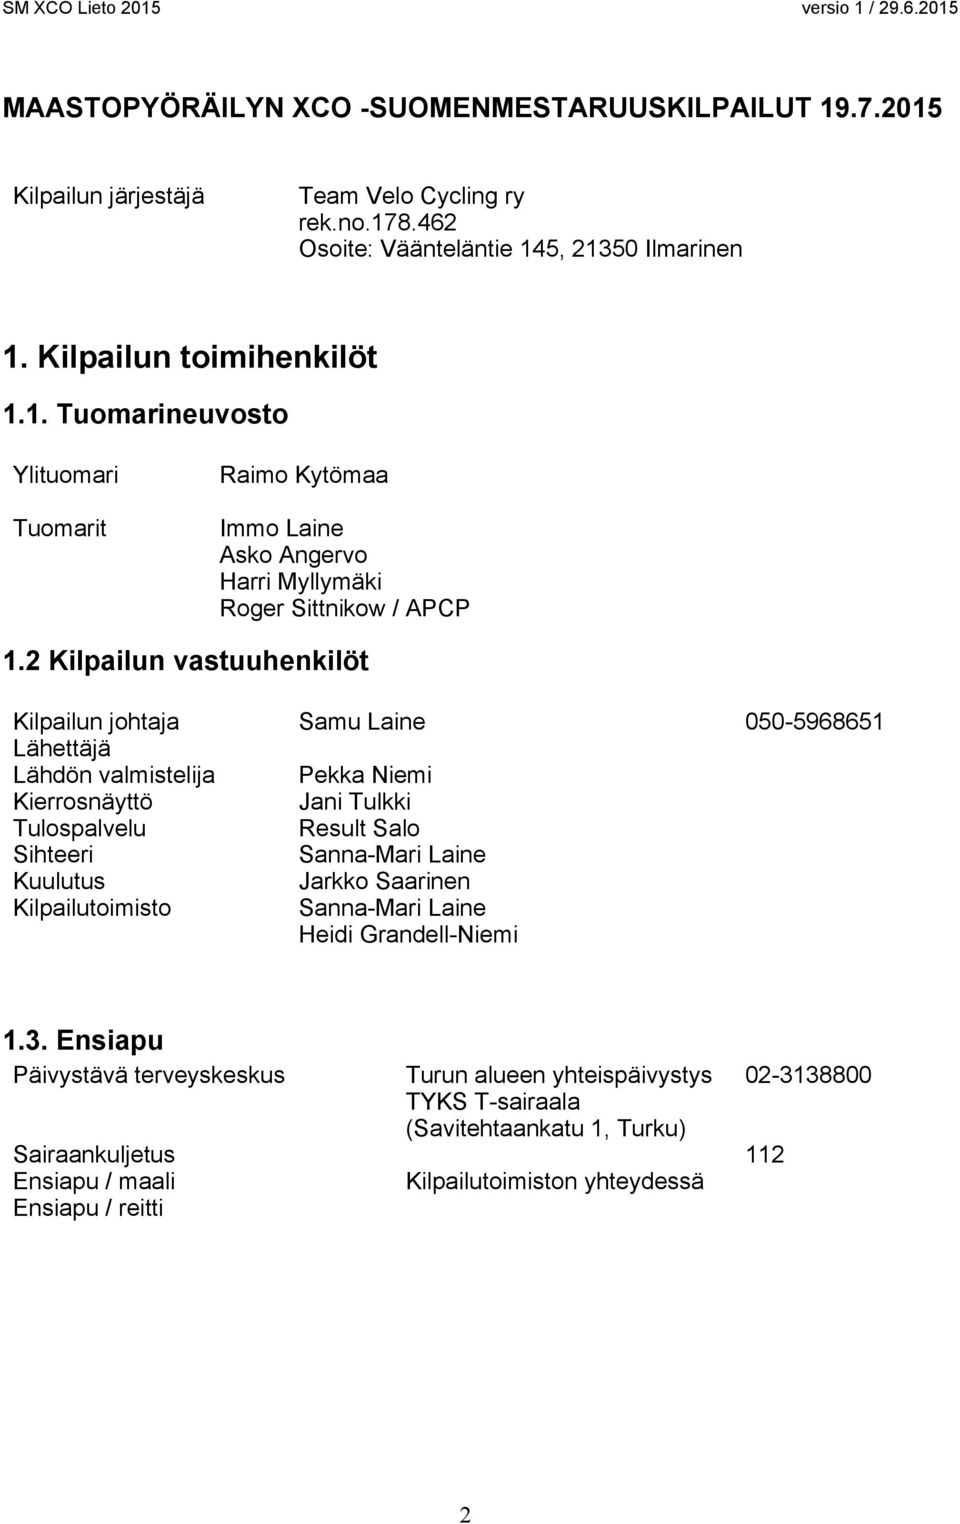 Kuulutus Jarkko Saarinen Kilpailutoimisto Sanna-Mari Laine Heidi Grandell-Niemi 1.3.